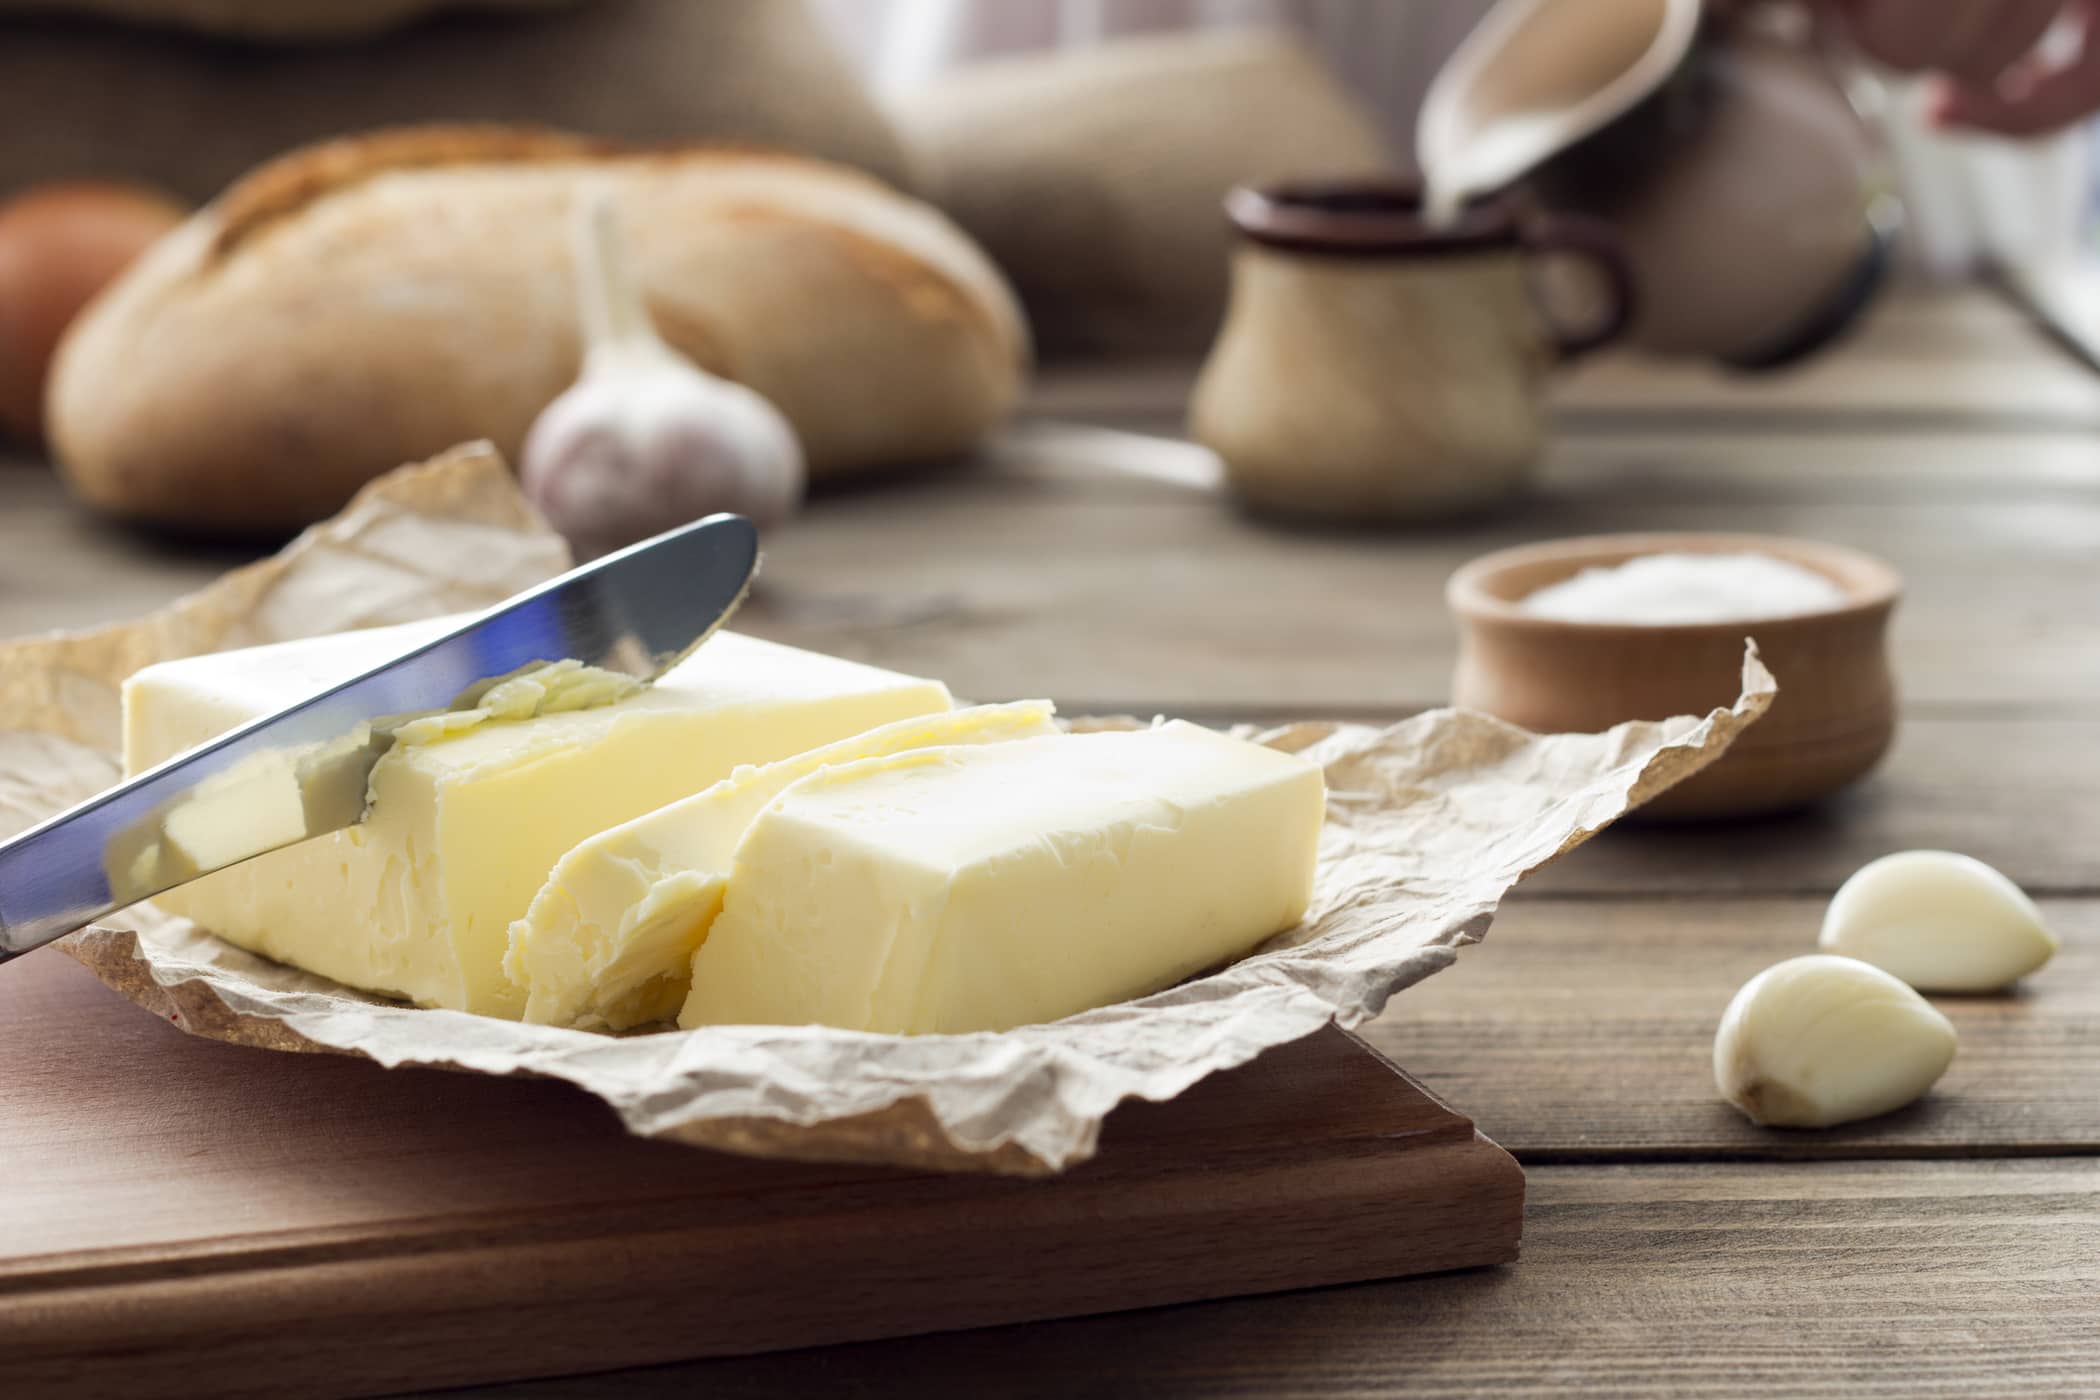 Tereyağı ve Margarin Arasında Hangisi Daha Sağlıklı?